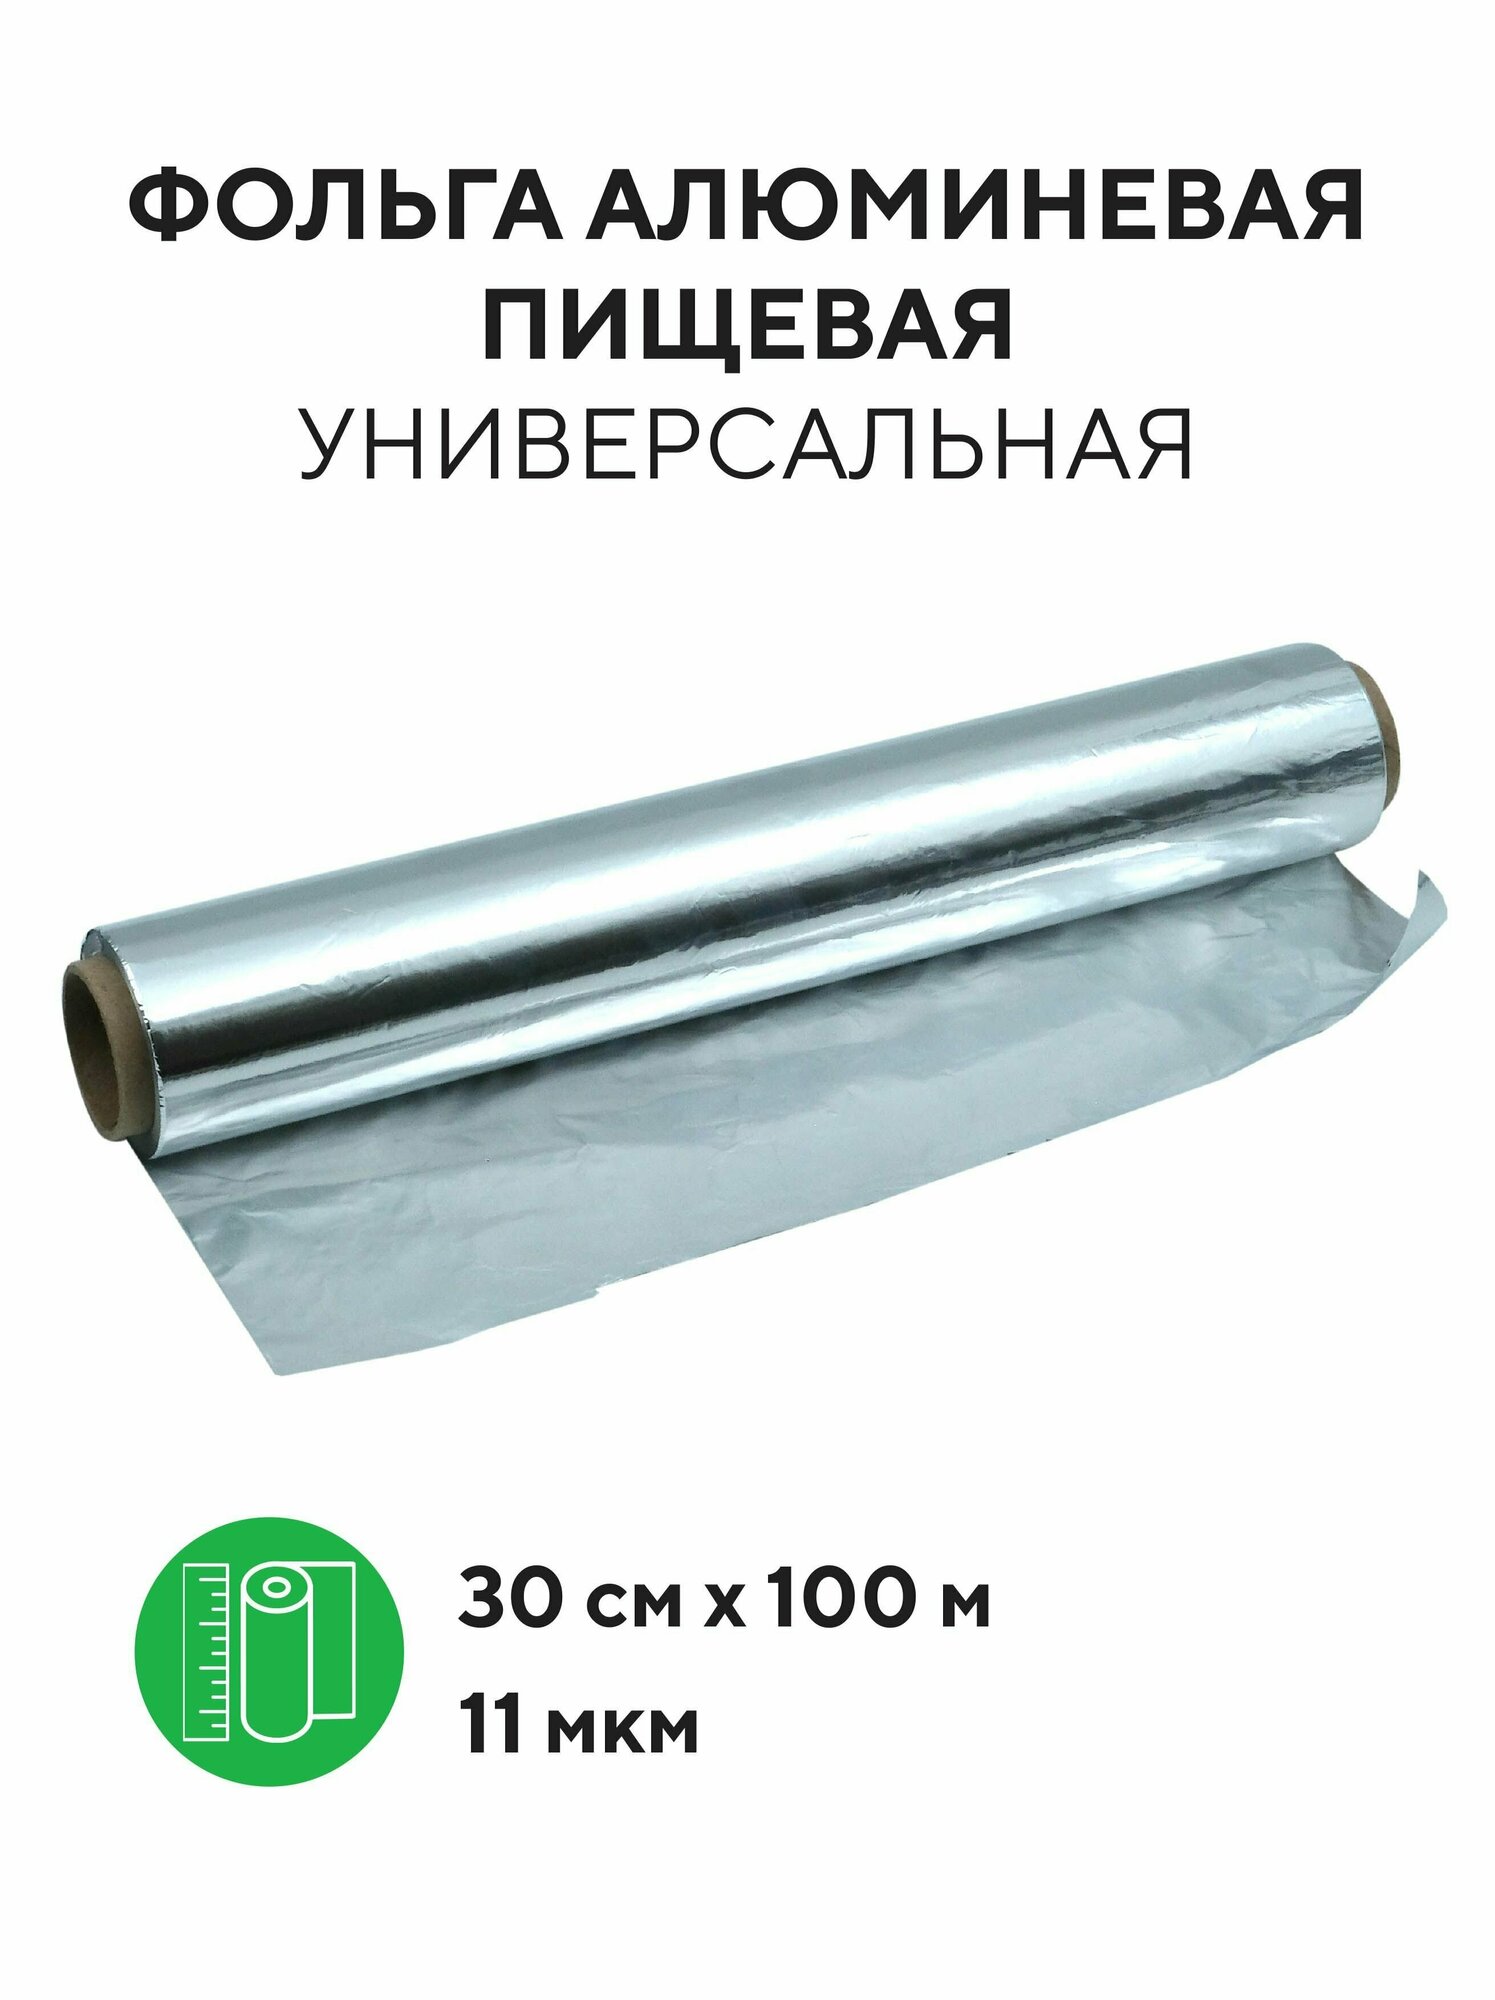 Фольга алюминиевая пищевая 11 мкм для запекания, выпечки, упаковки 30 см х 100 м